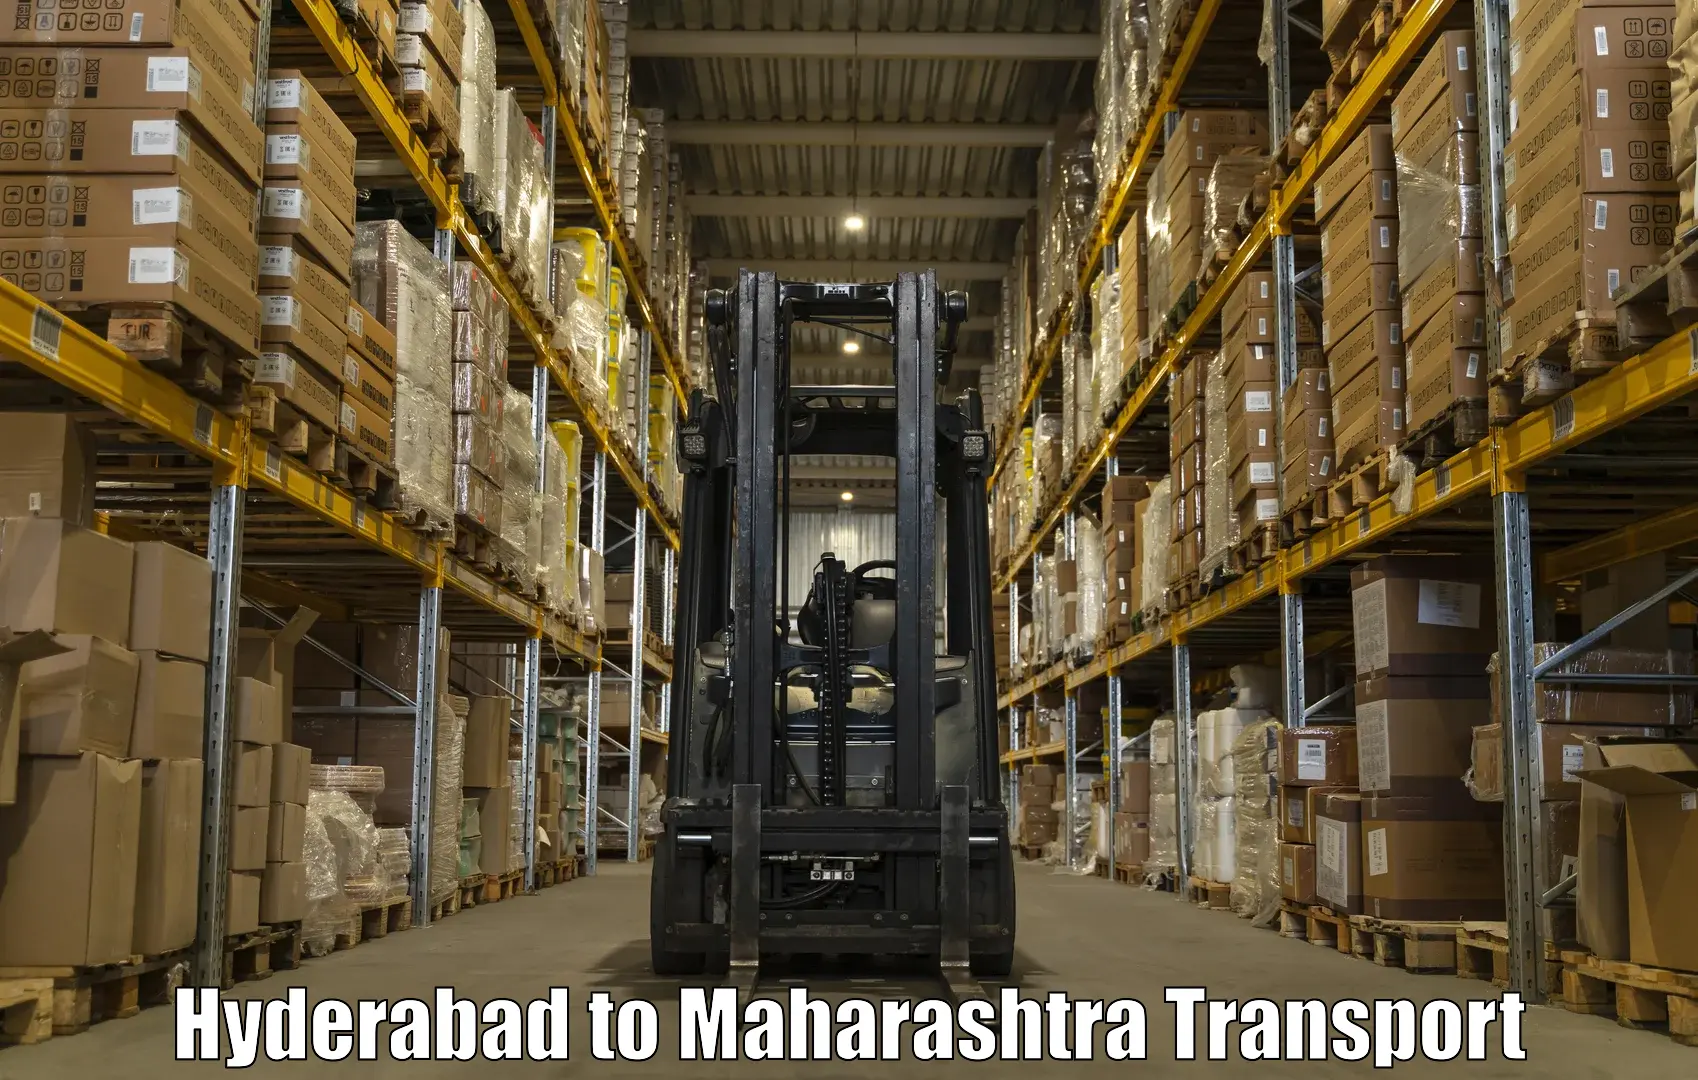 Online transport service Hyderabad to Walchandnagar